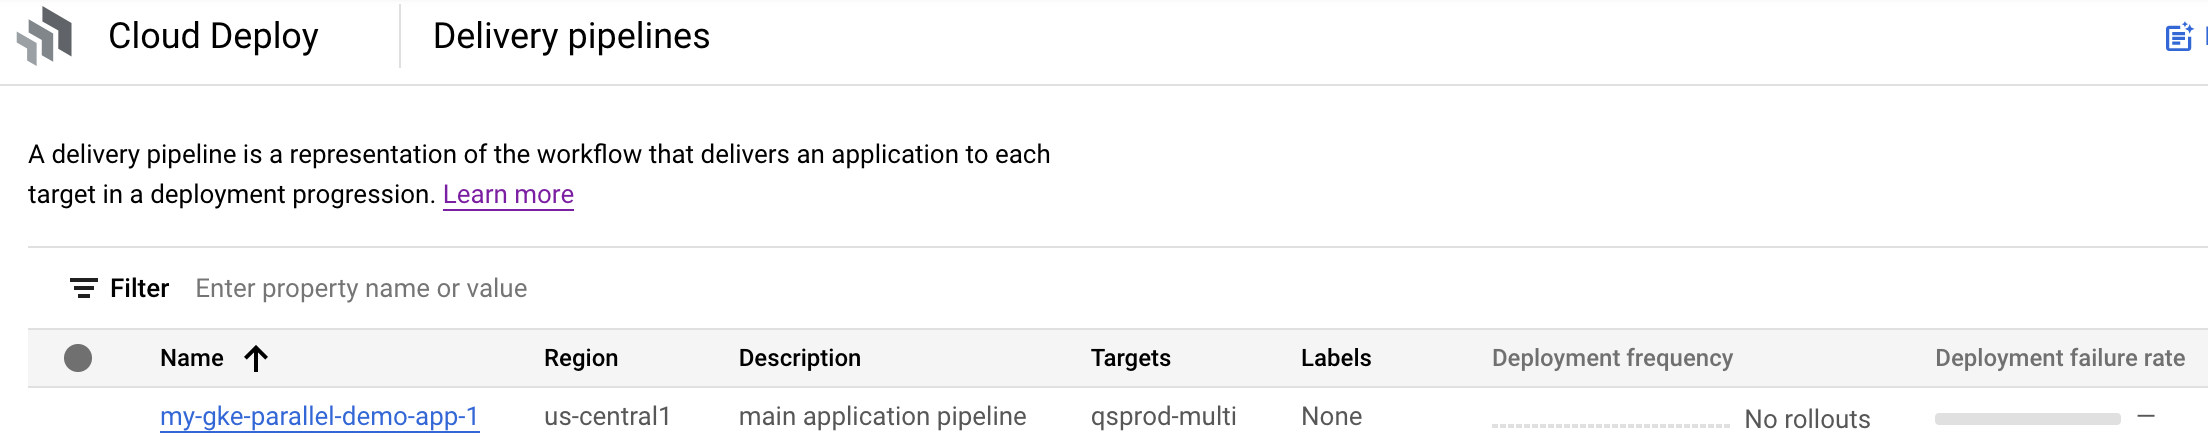 Visualisation du pipeline de livraison dans la console Google Cloud 